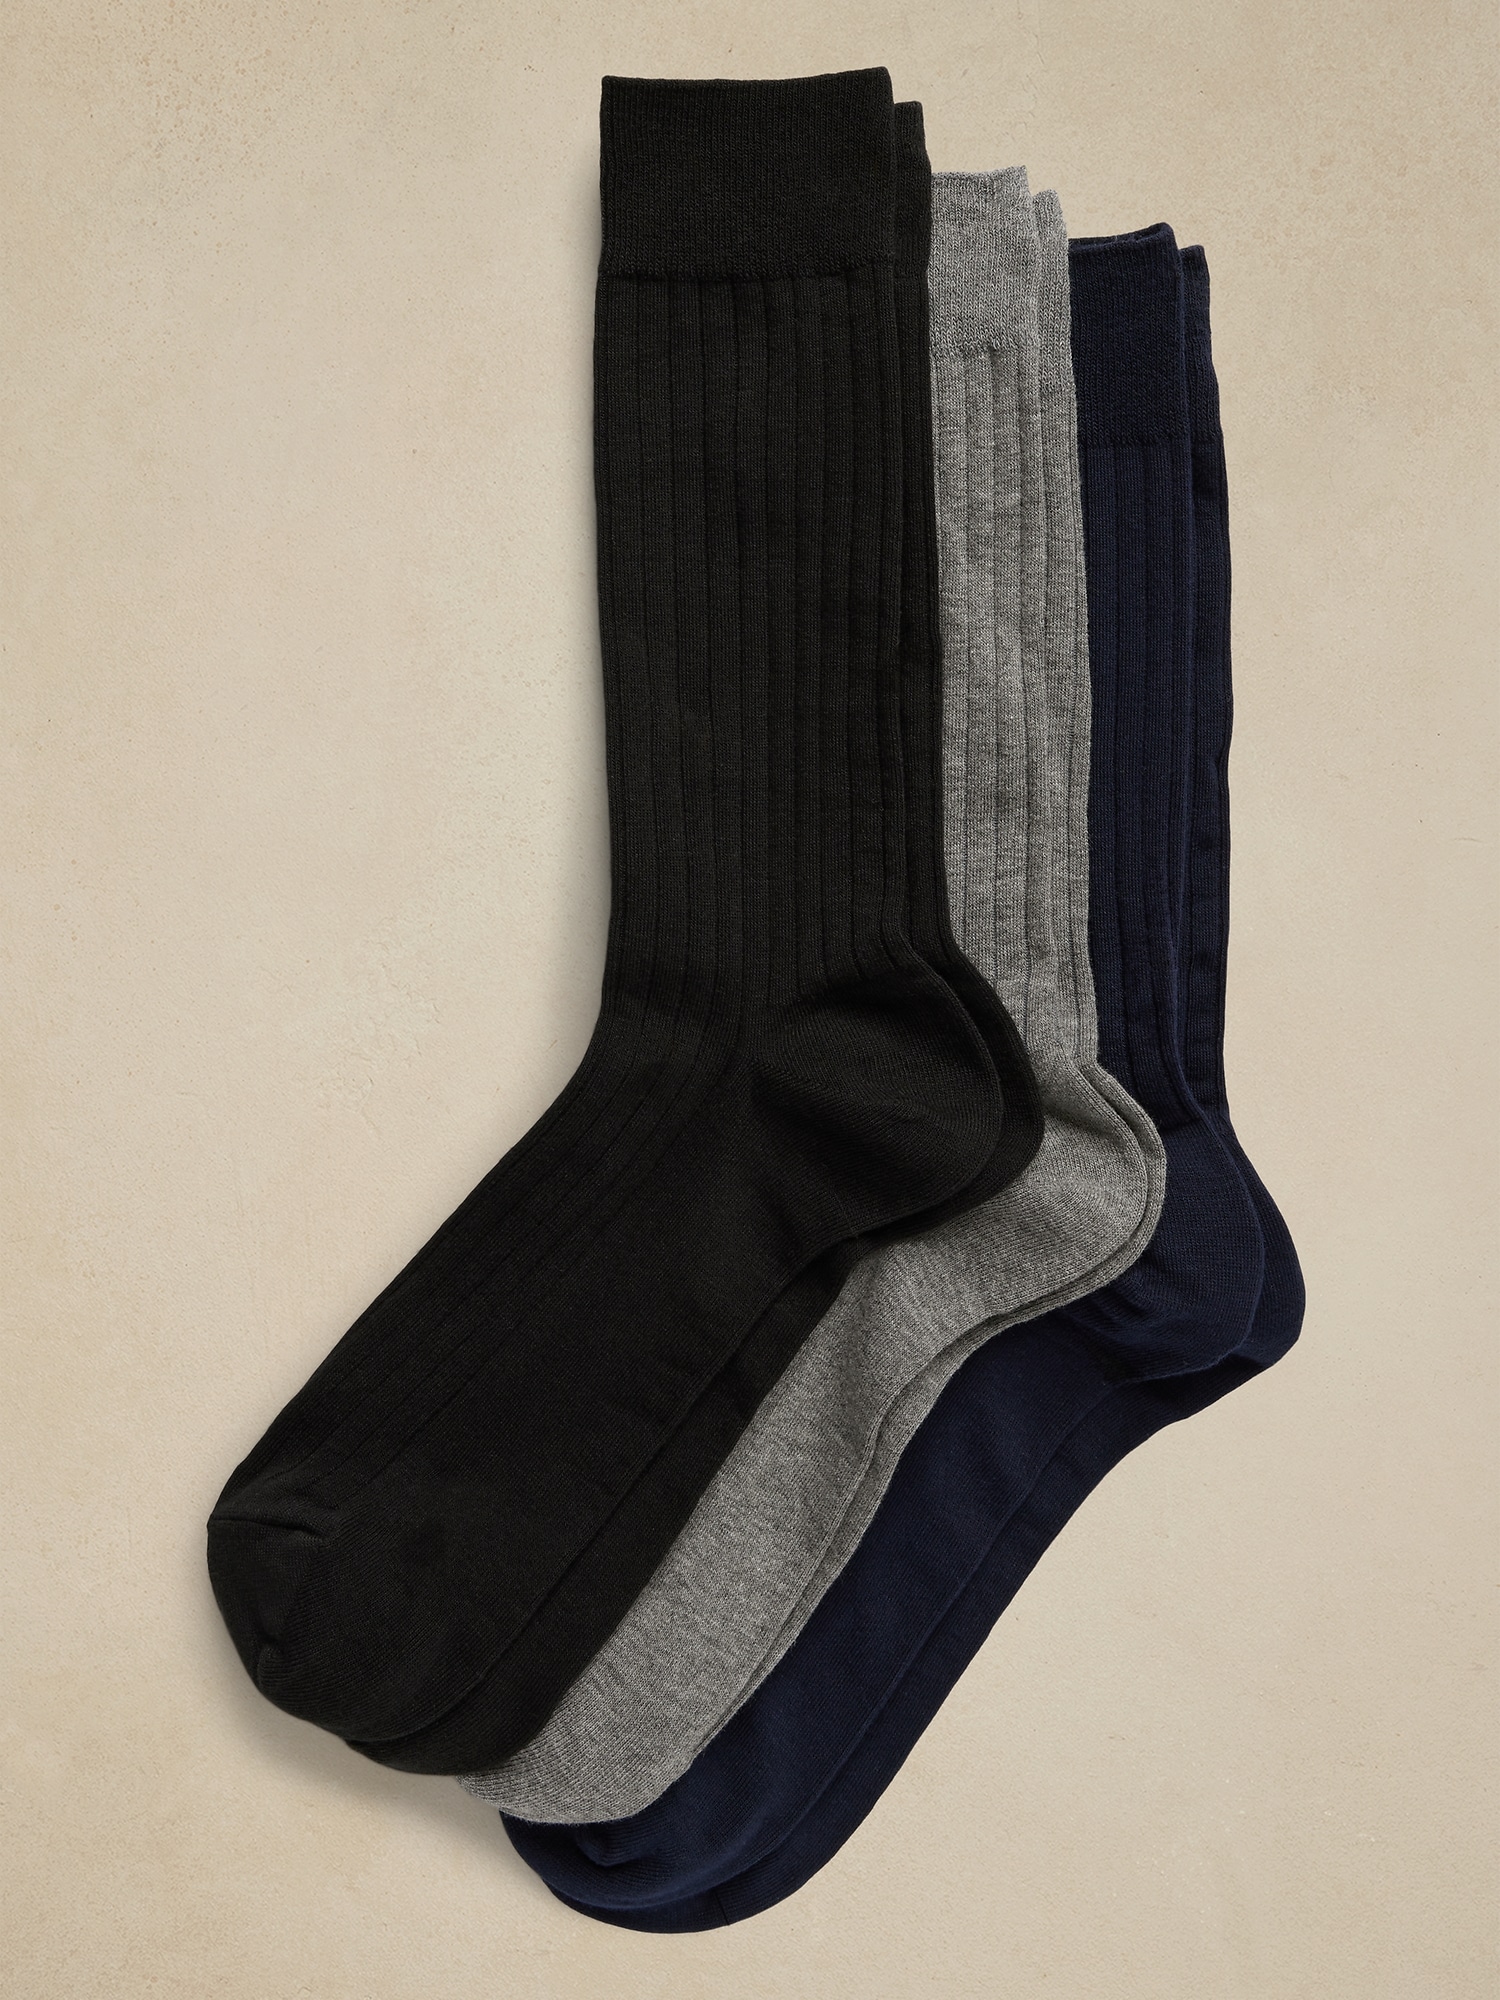 VRD SOCKS Mens Dress Socks - Bamboo Socks for Men - 5-Pack - Size 9-11 /  11-13 - Khaki Tan Beige Light Brown - Walmart.com